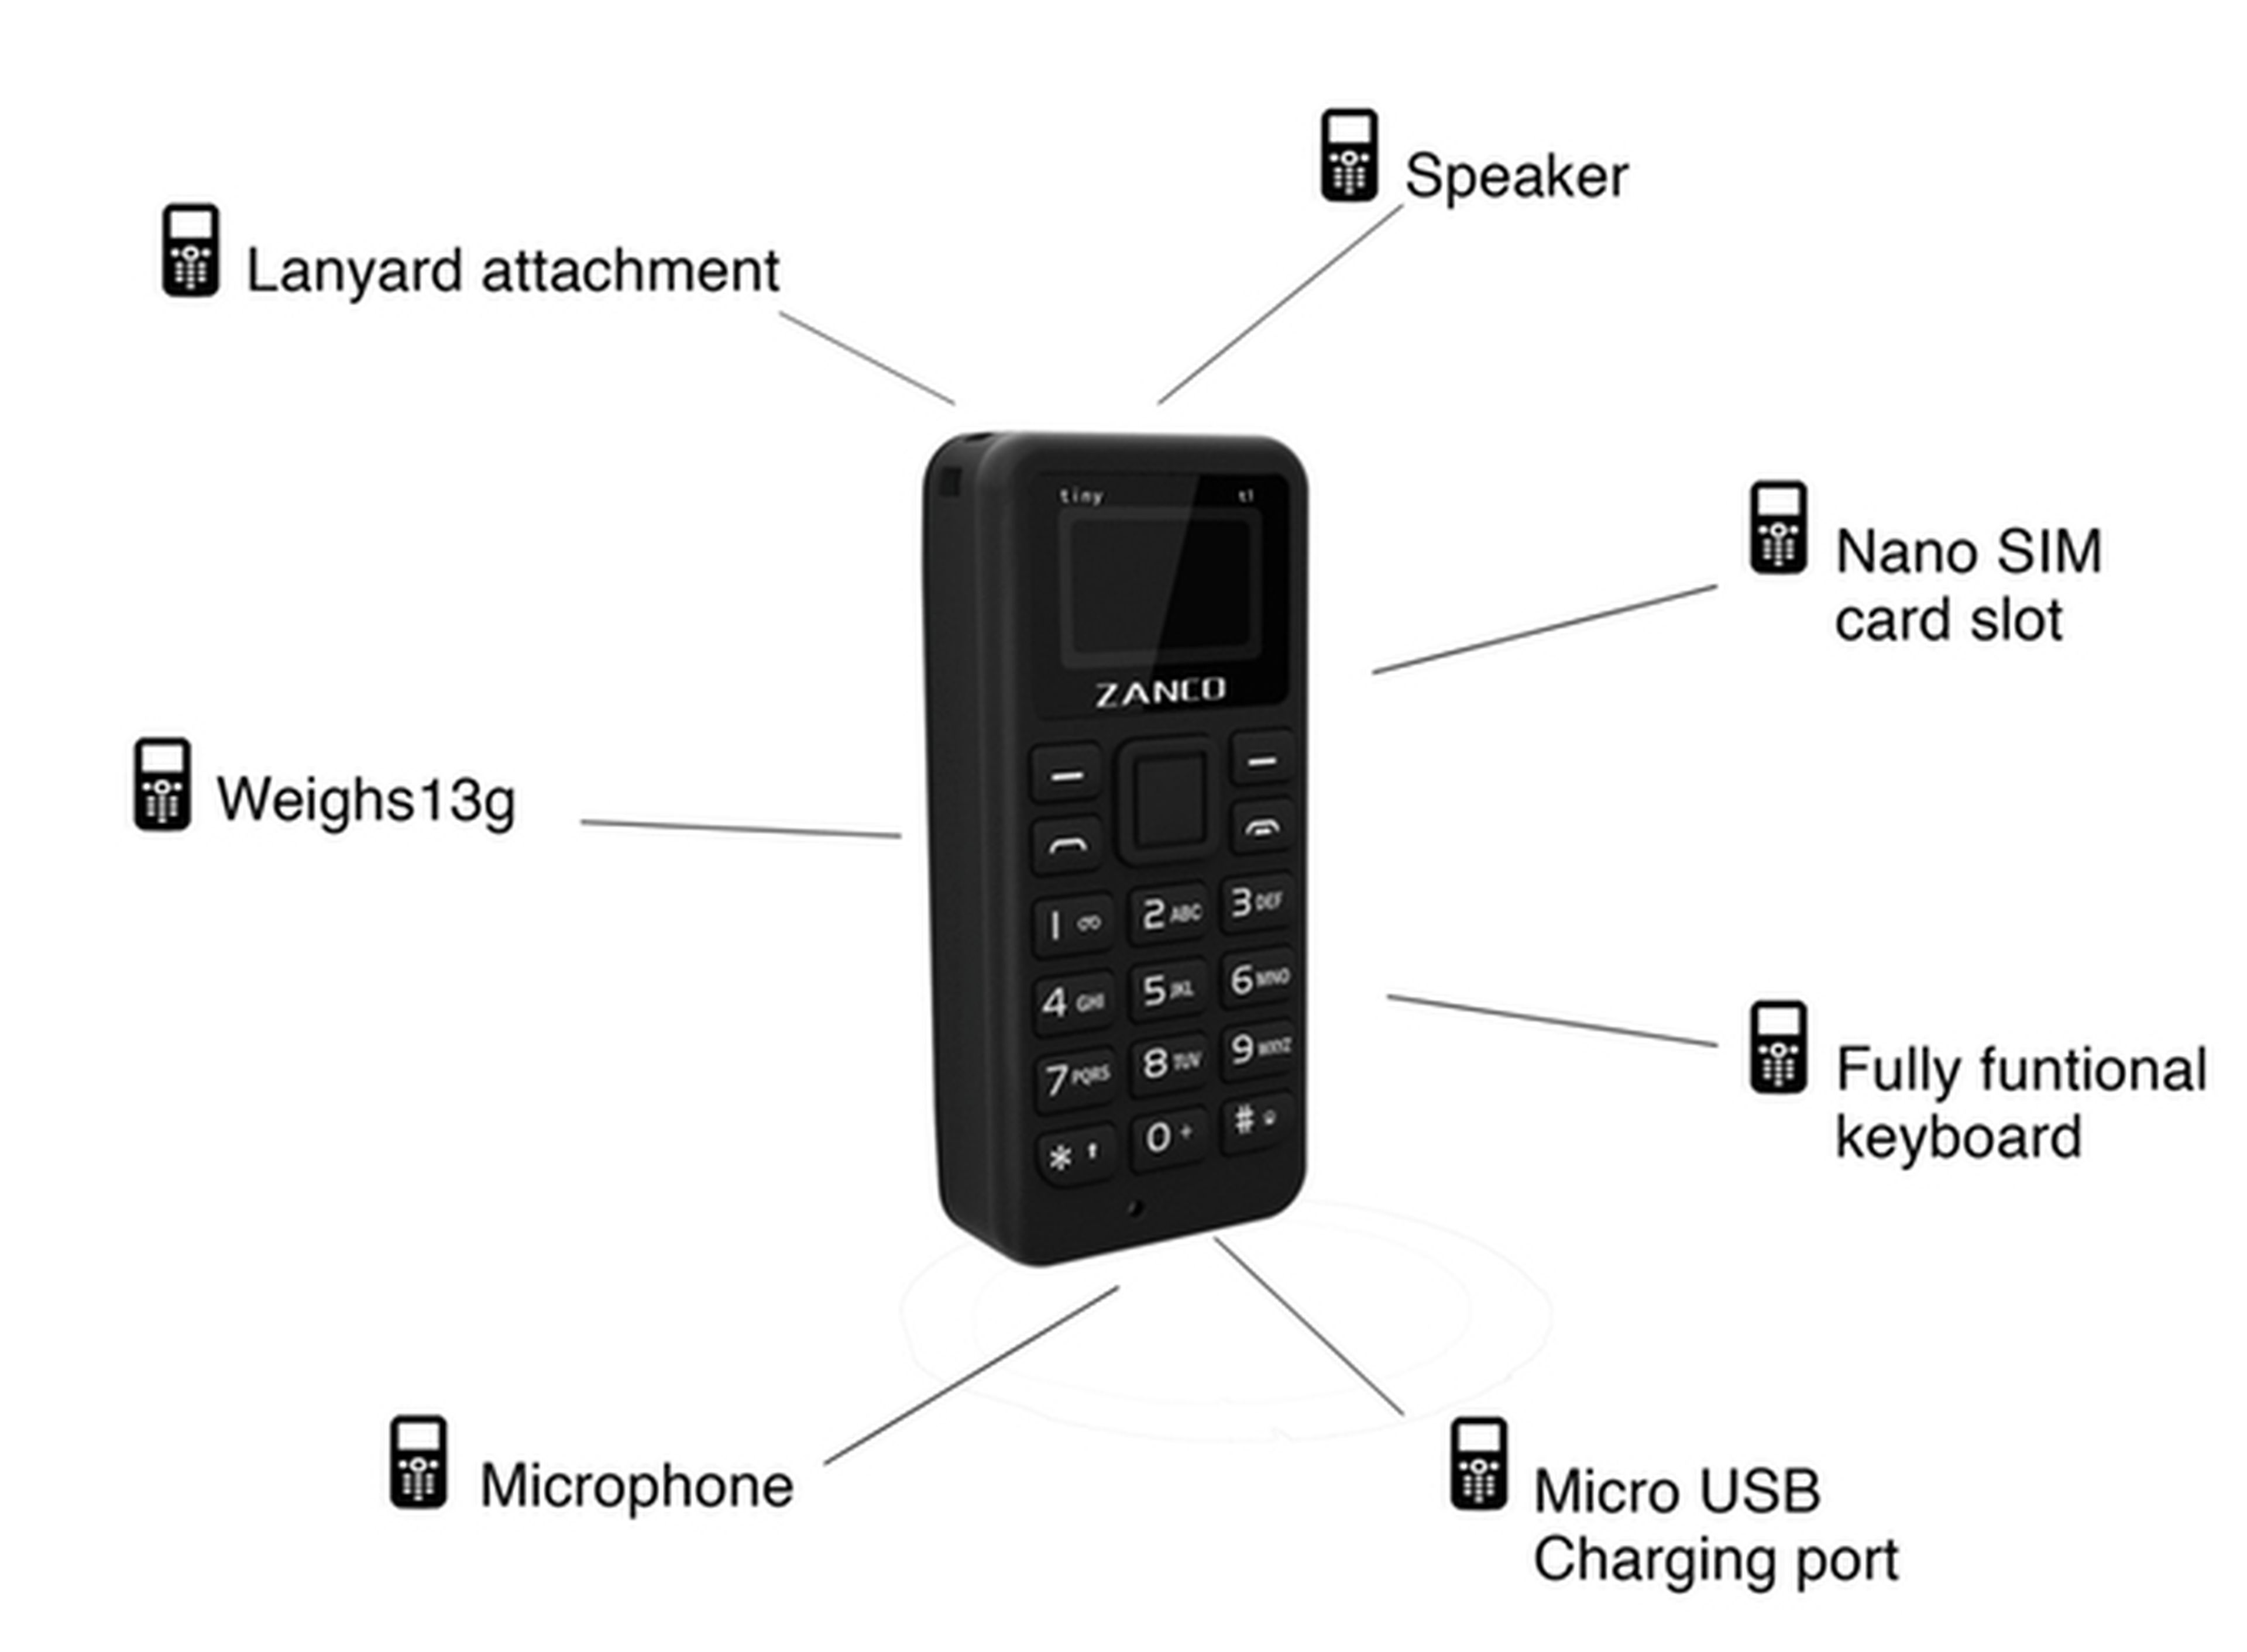 El micromóvil, el teléfono más pequeño que un dedo pulgar